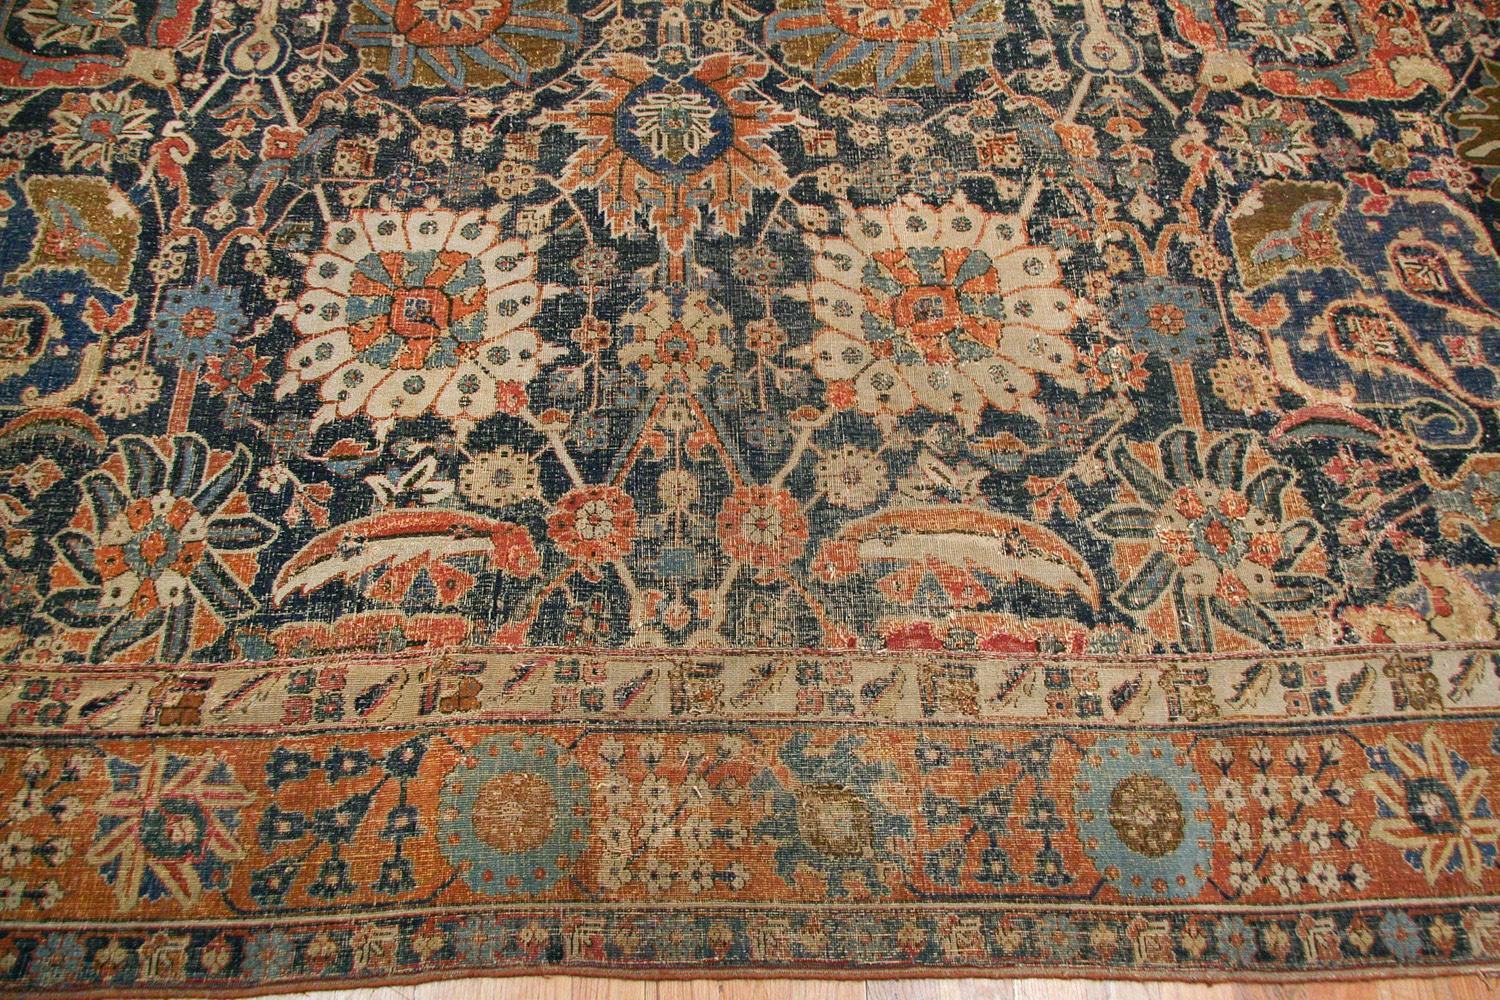 Seltener antiker Vasenteppich aus dem 17. Jahrhundert aus Kerman, Herkunftsland: Persien, ca. 17. Jahrhundert. Größe: 11 ft 5 in x 20 ft 2 in (3,48 m x 6,15 m). 

